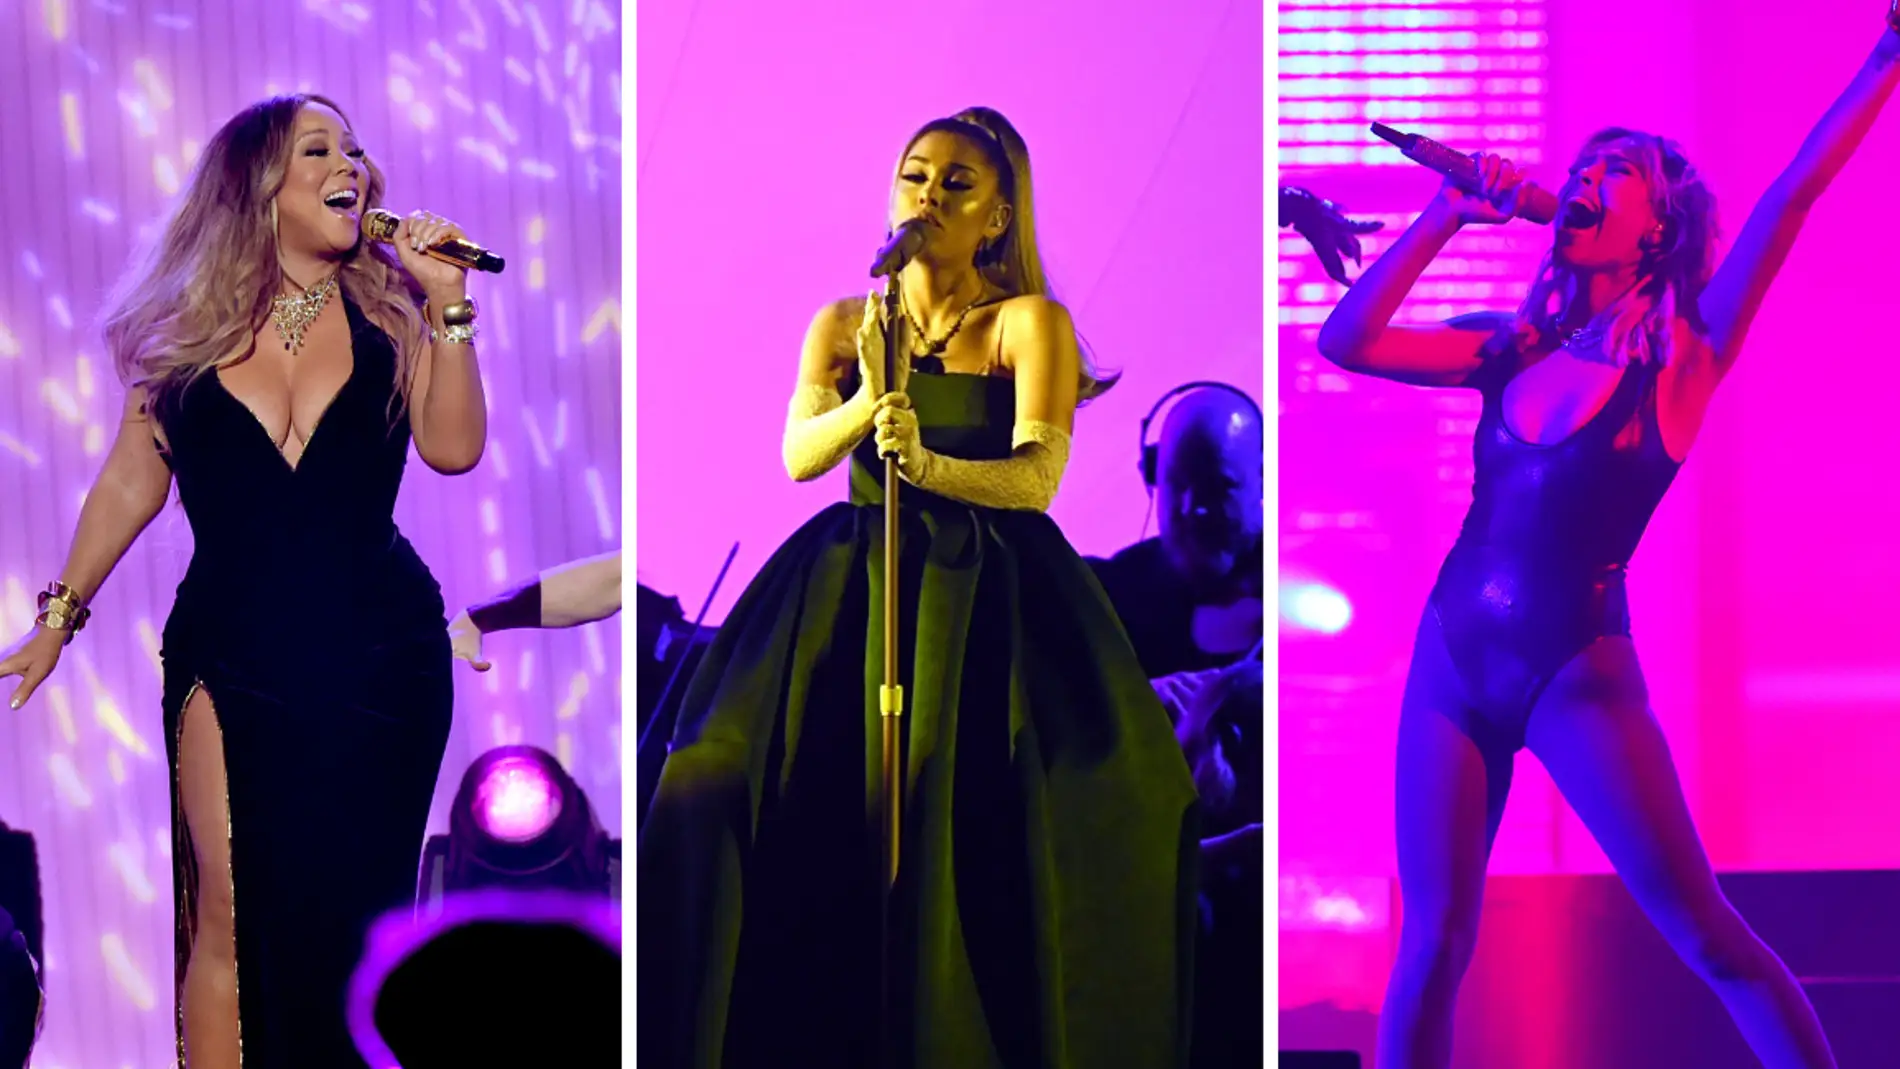 Qué son las 'whistle notes': el registro vocal más alto de la voz humana al que llegan artistas como Ariana Grande, Mariah Carey y Danna Paola  